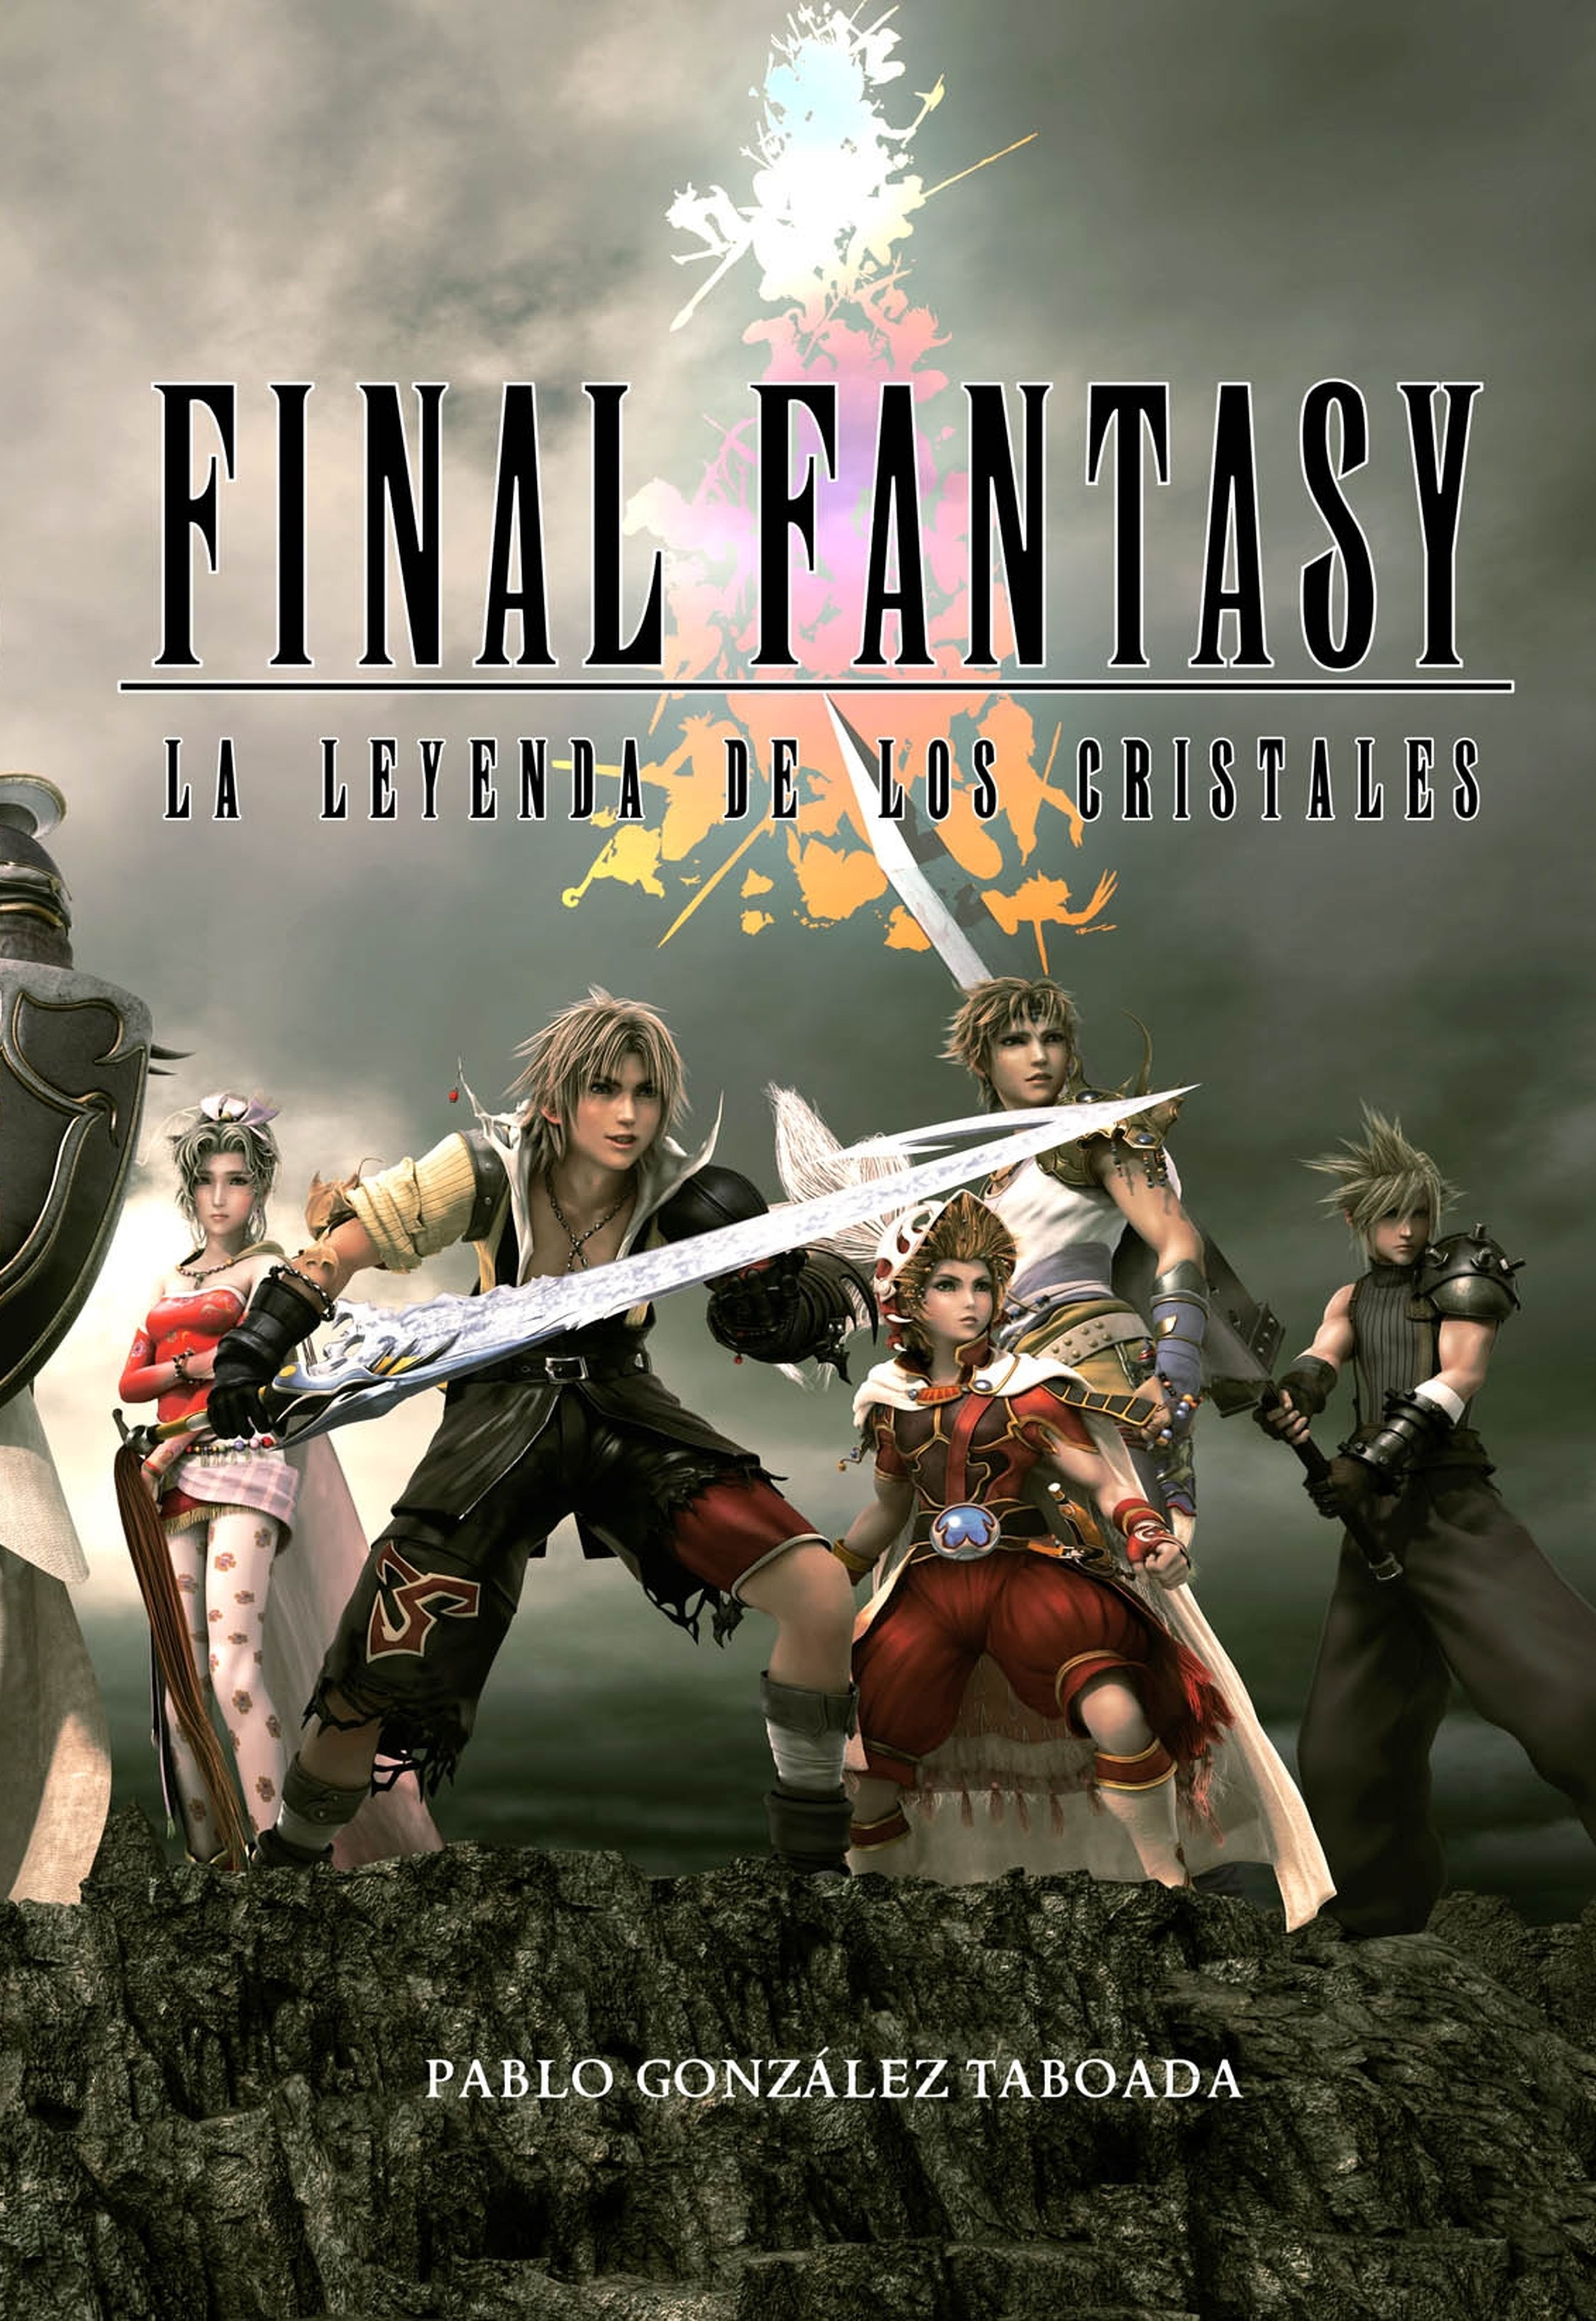 Nuevo libro sobre Final Fantasy